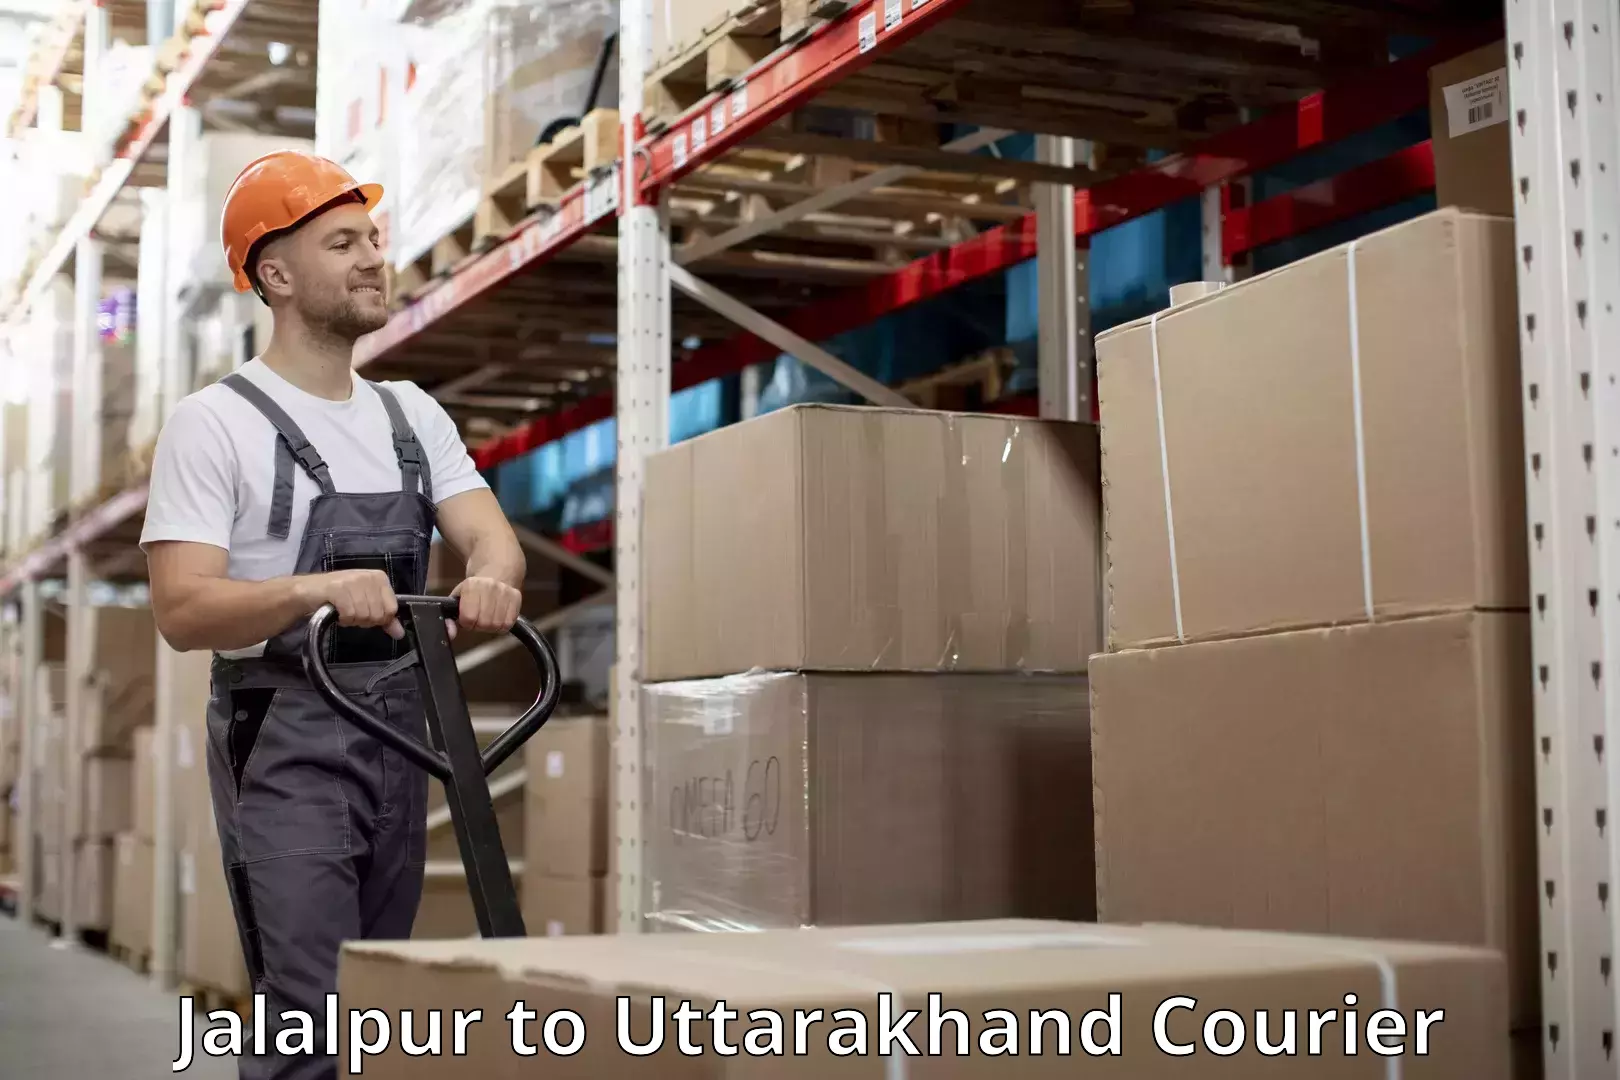 Customized luggage delivery Jalalpur to Uttarakhand